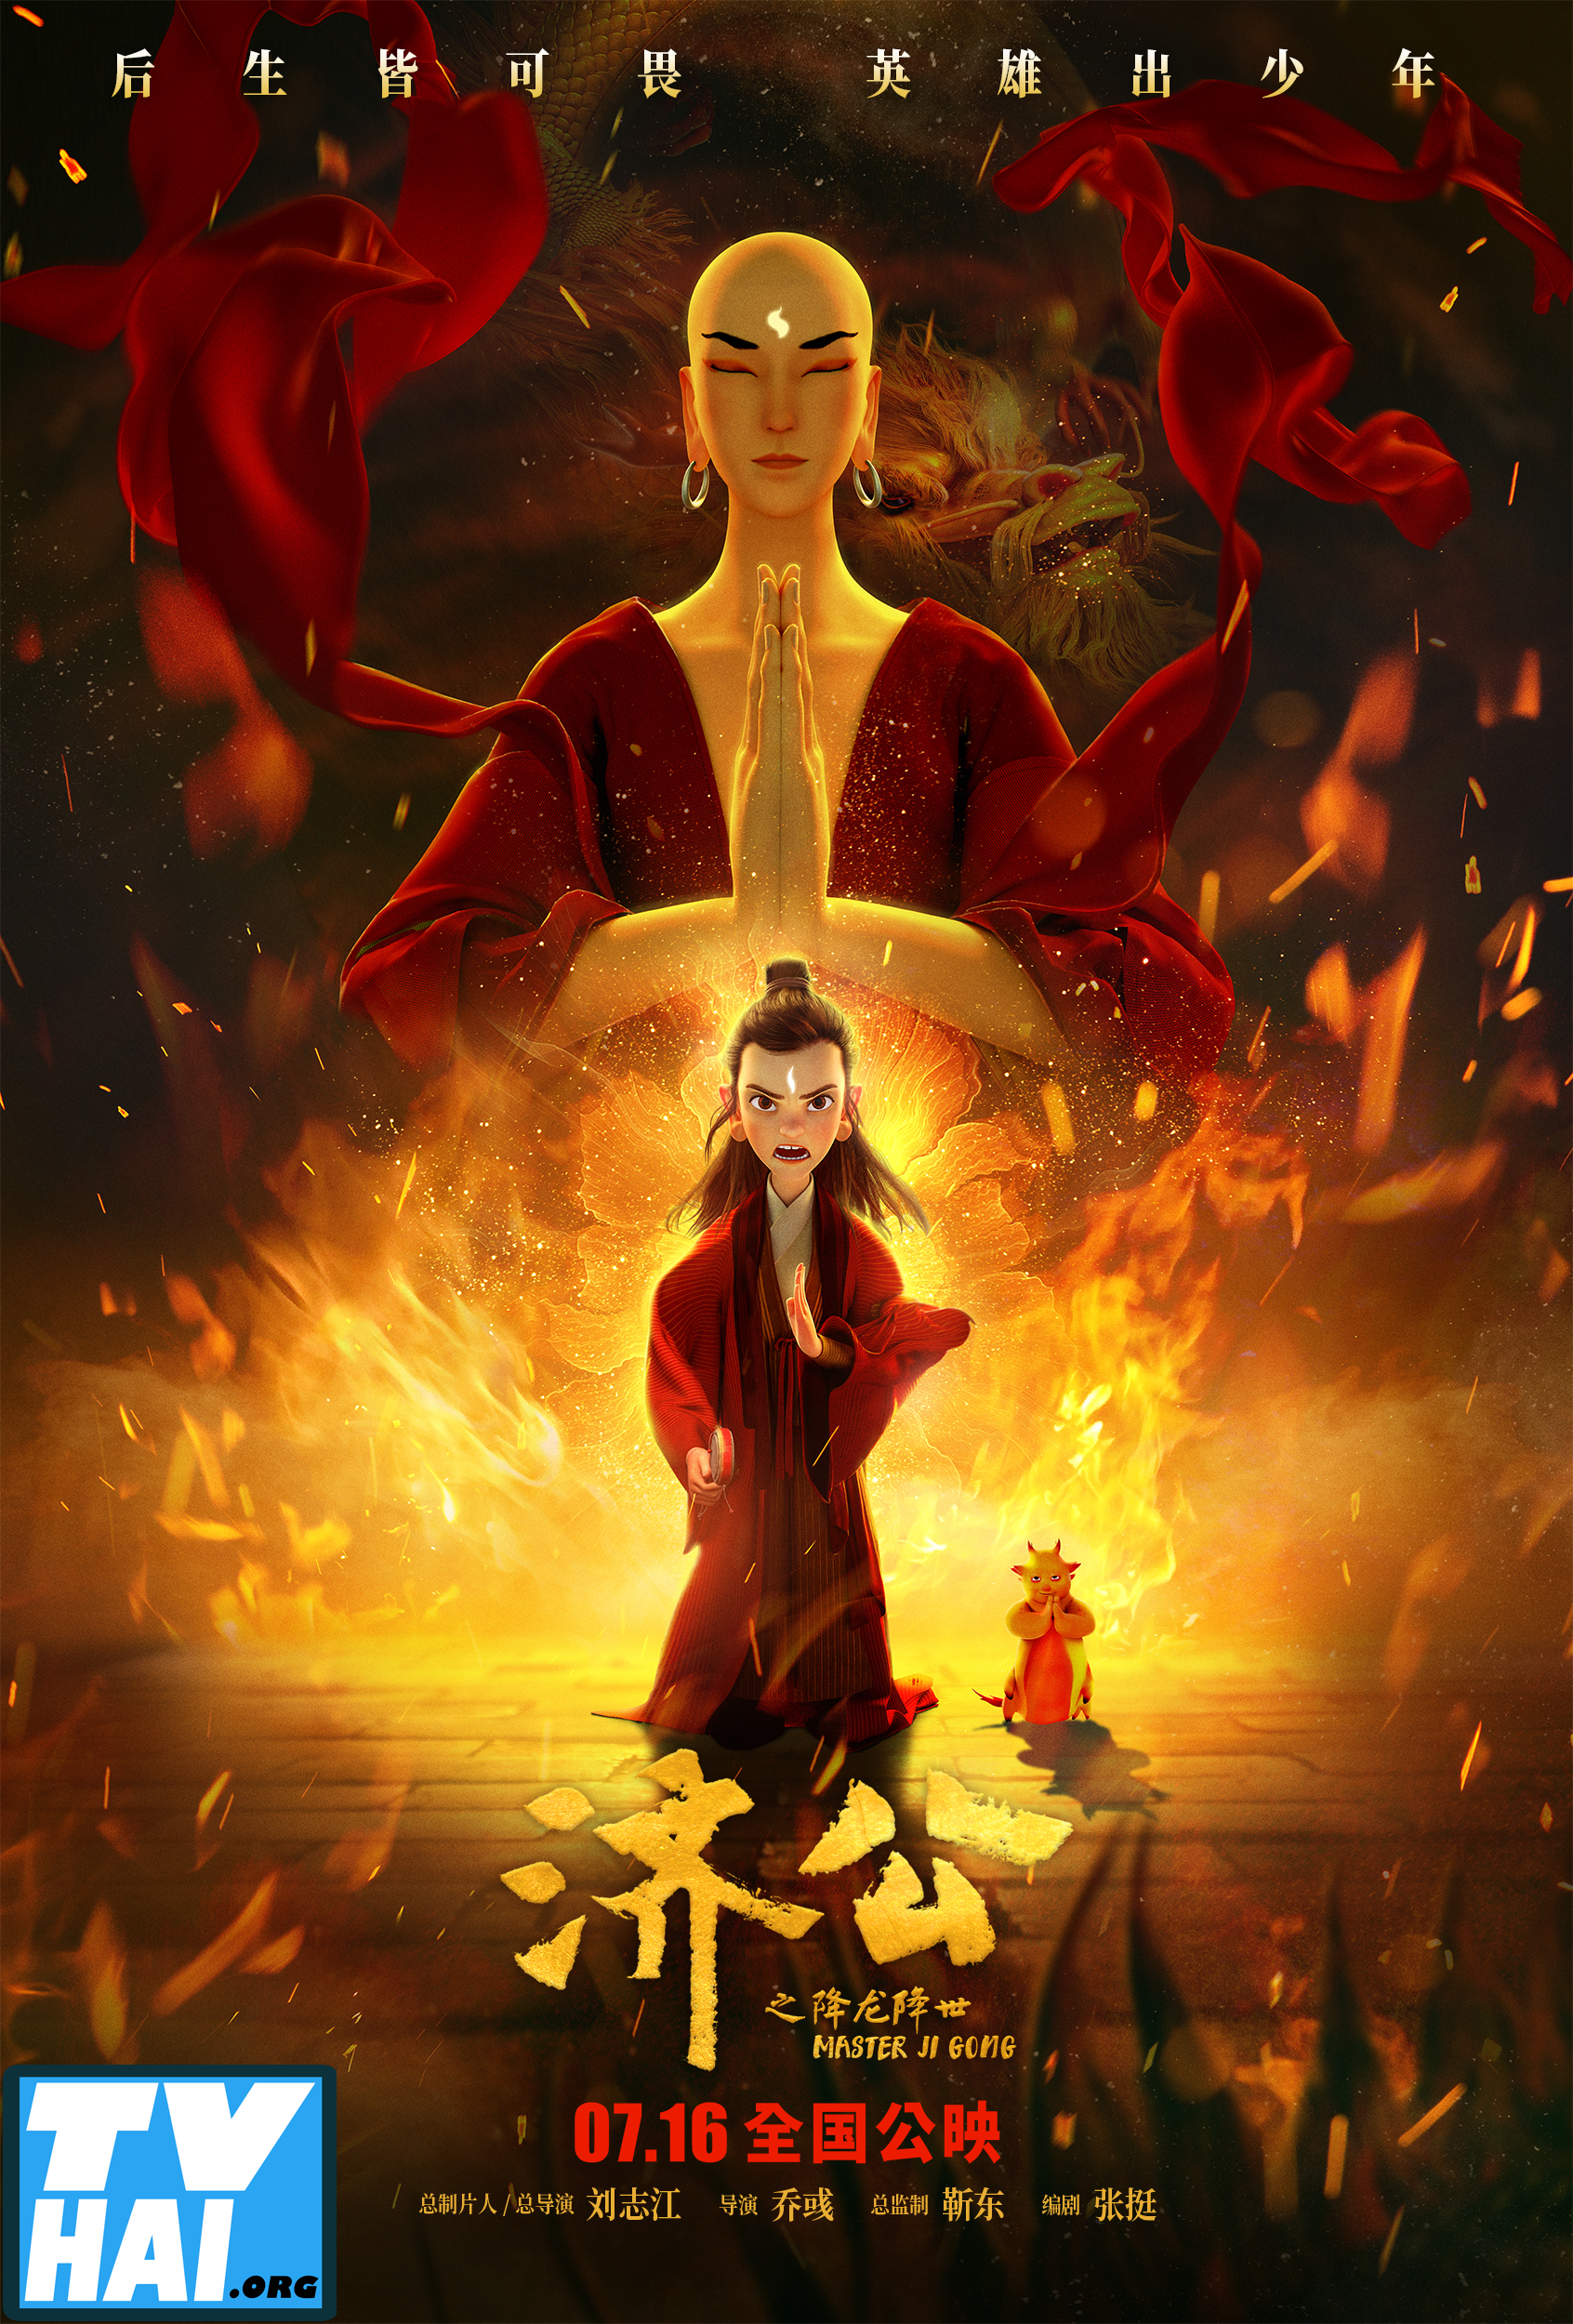 Poster Phim Tế Công: Hàng Long Giáng Thế (Master Ji Gong)